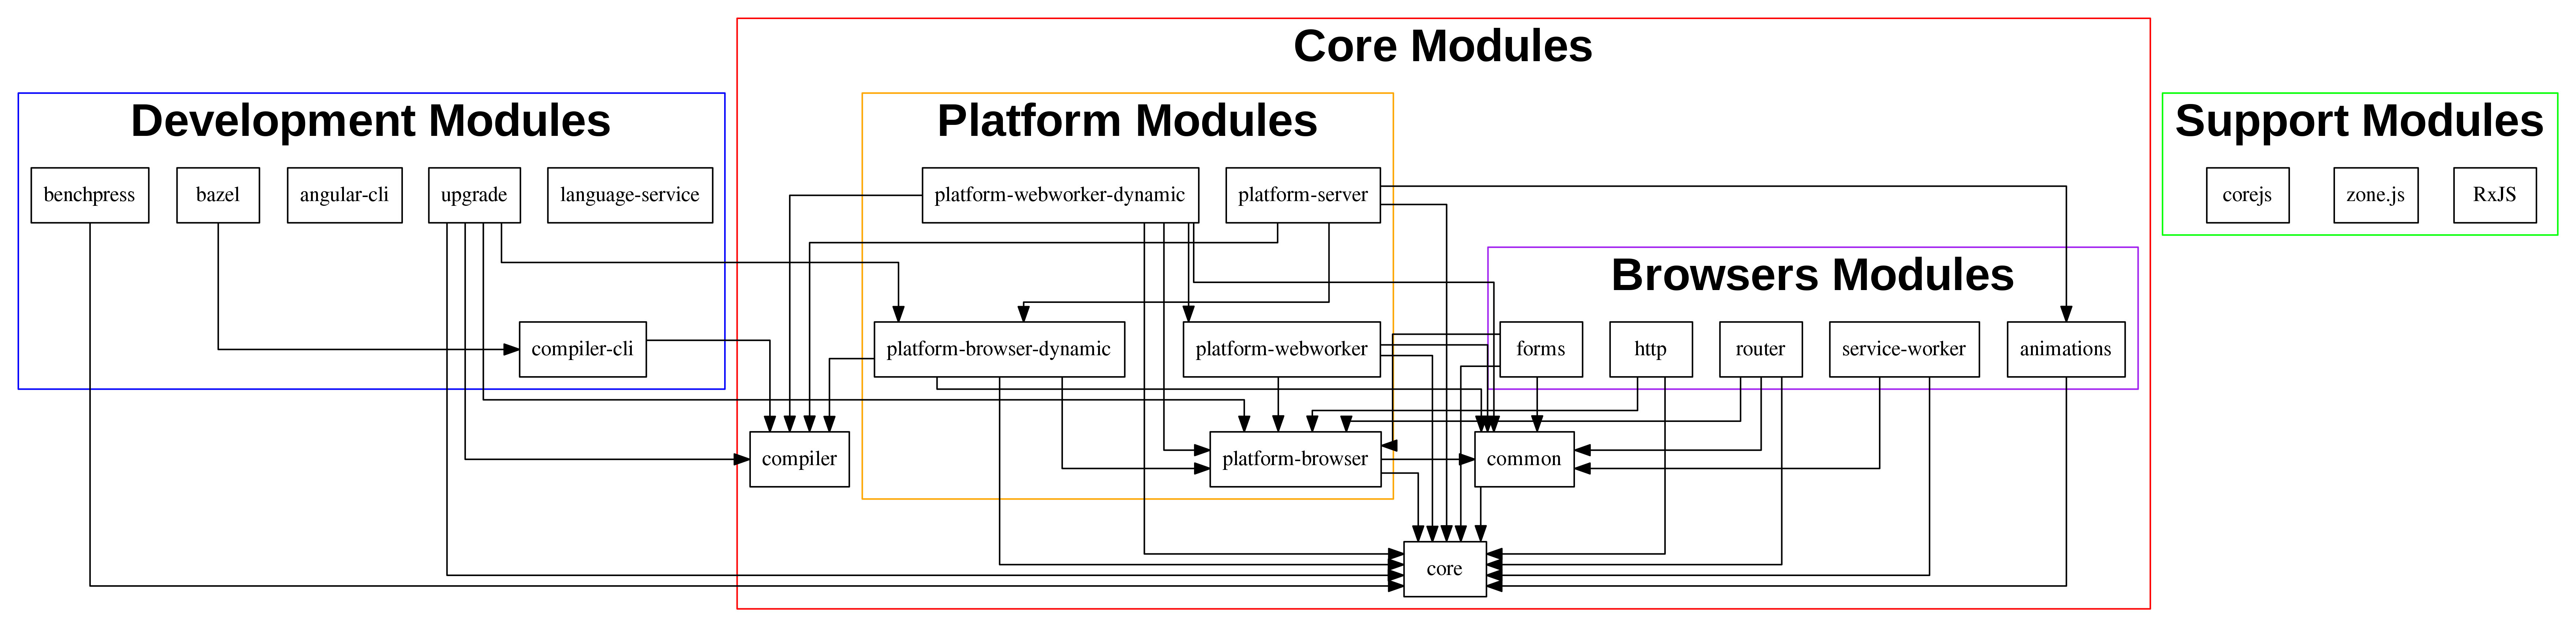 Modules Diagram